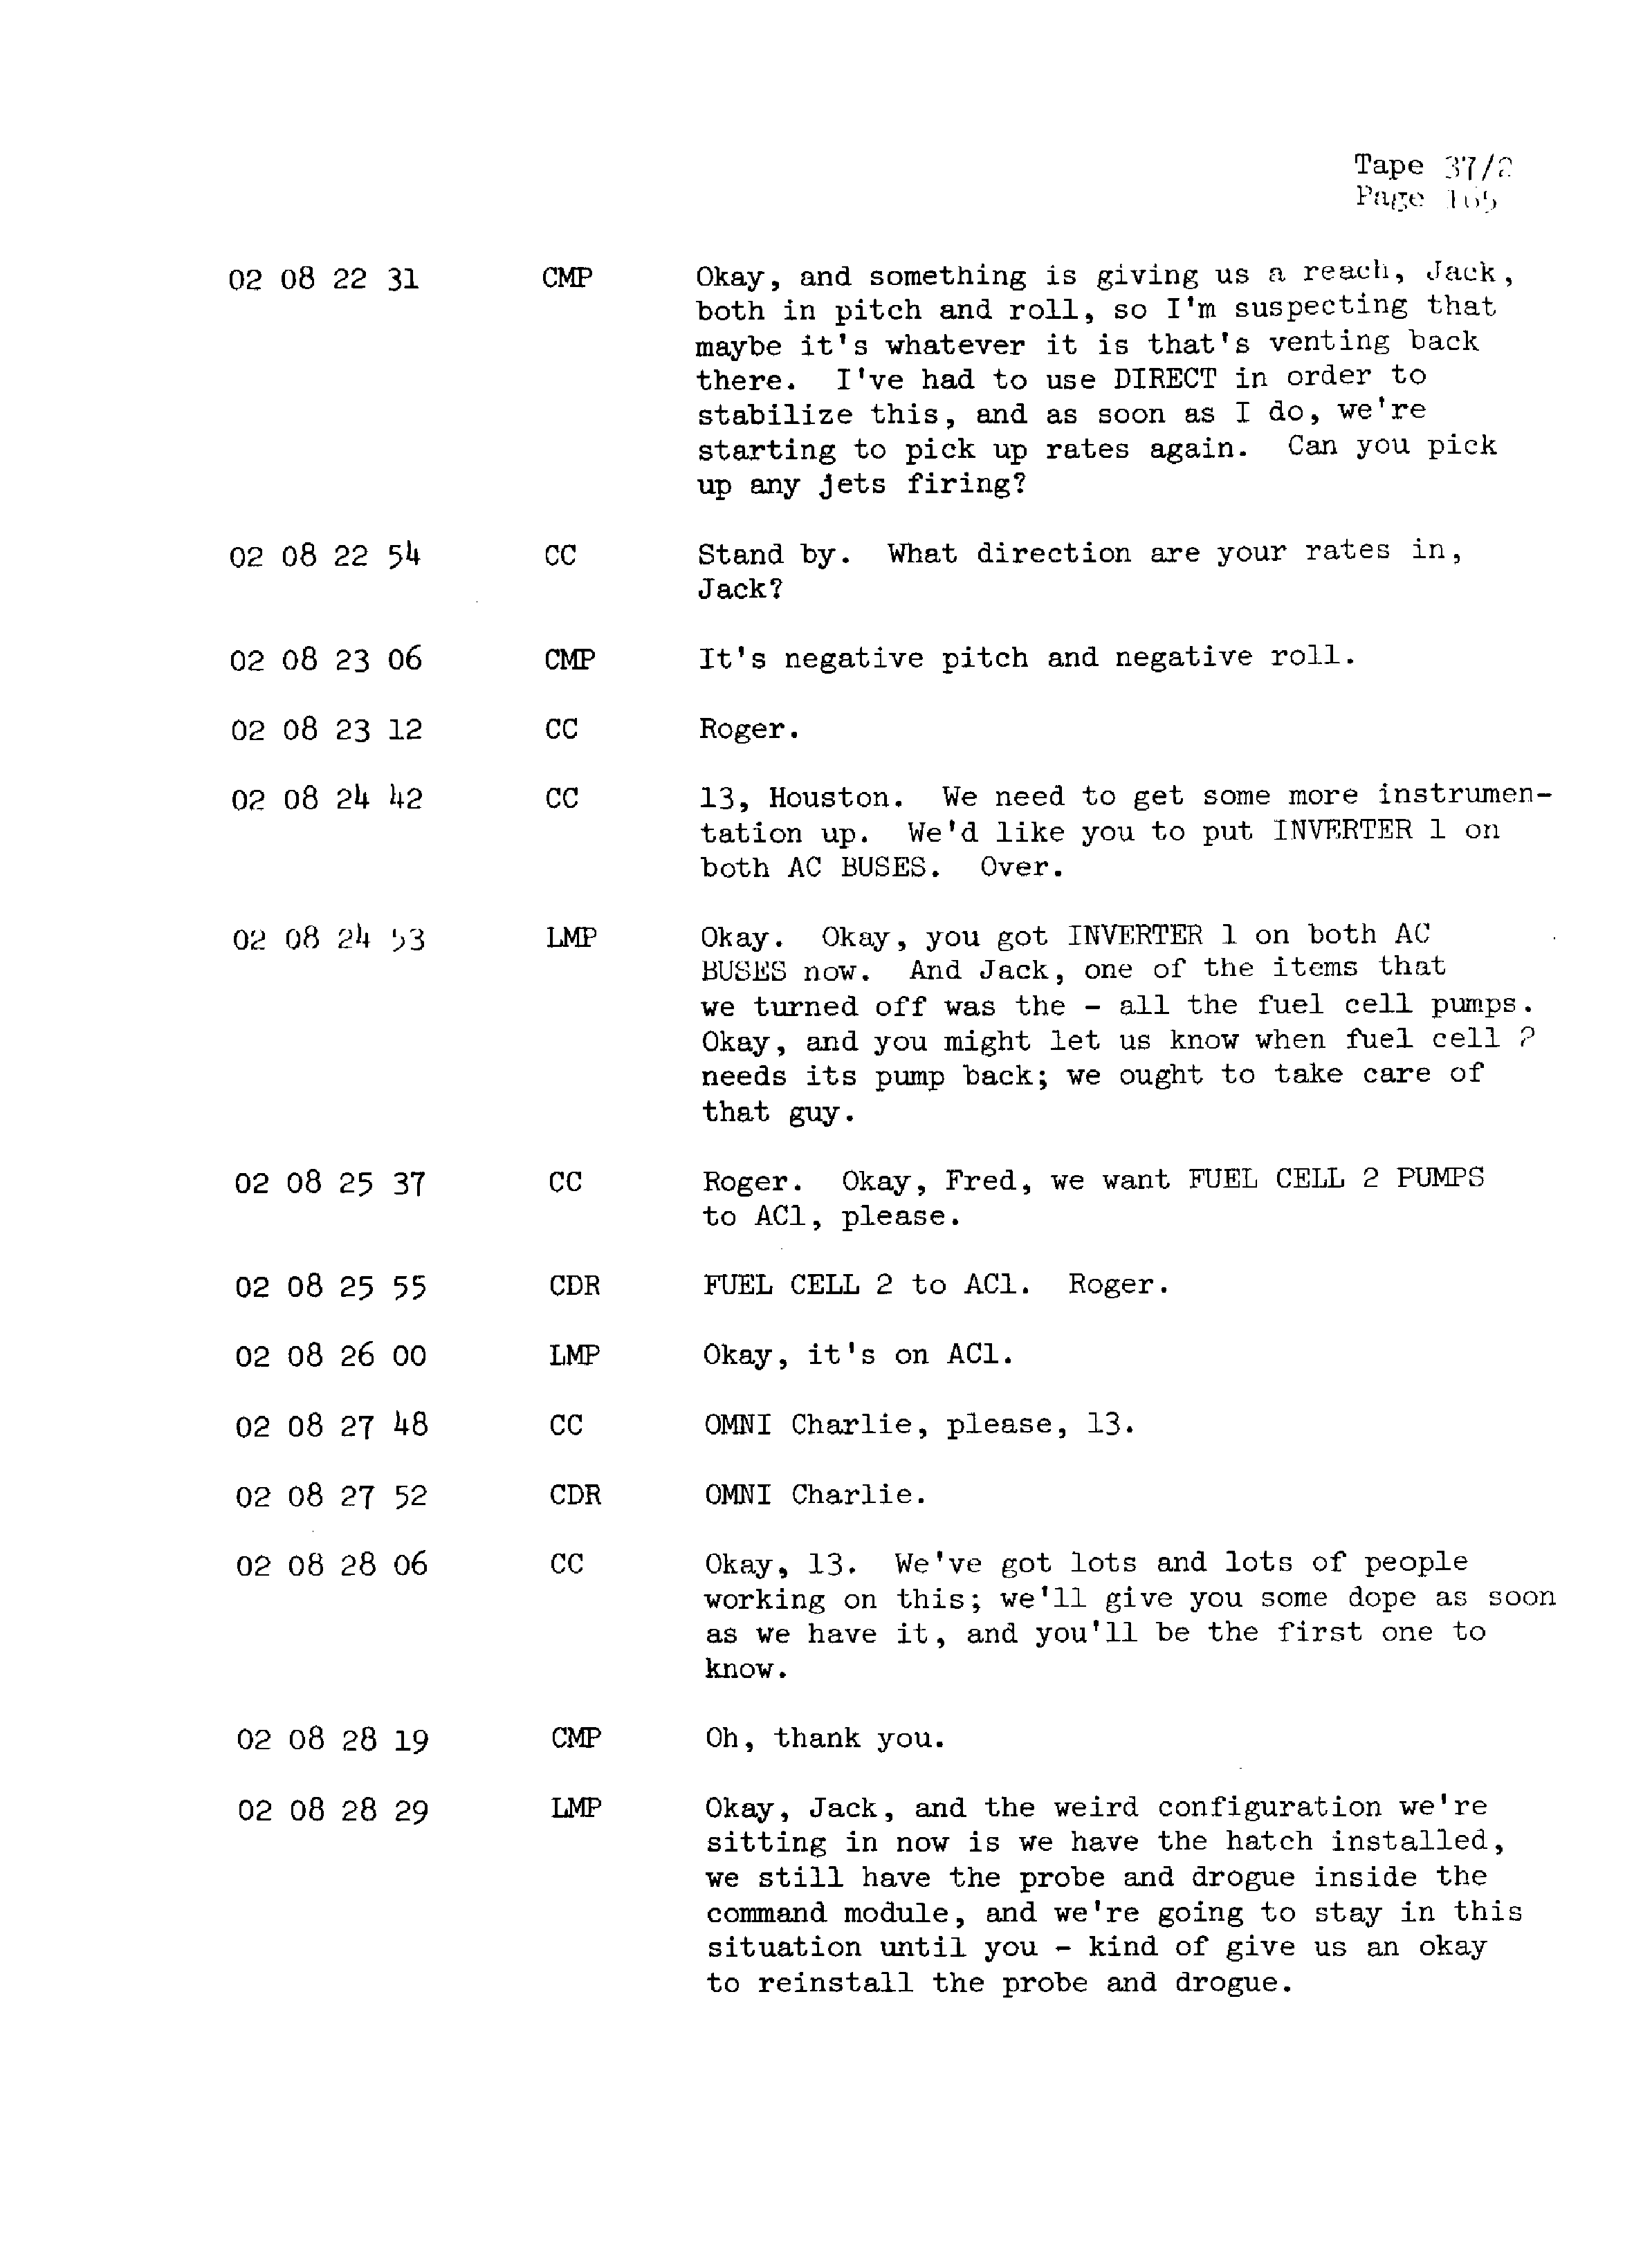 Page 172 of Apollo 13’s original transcript